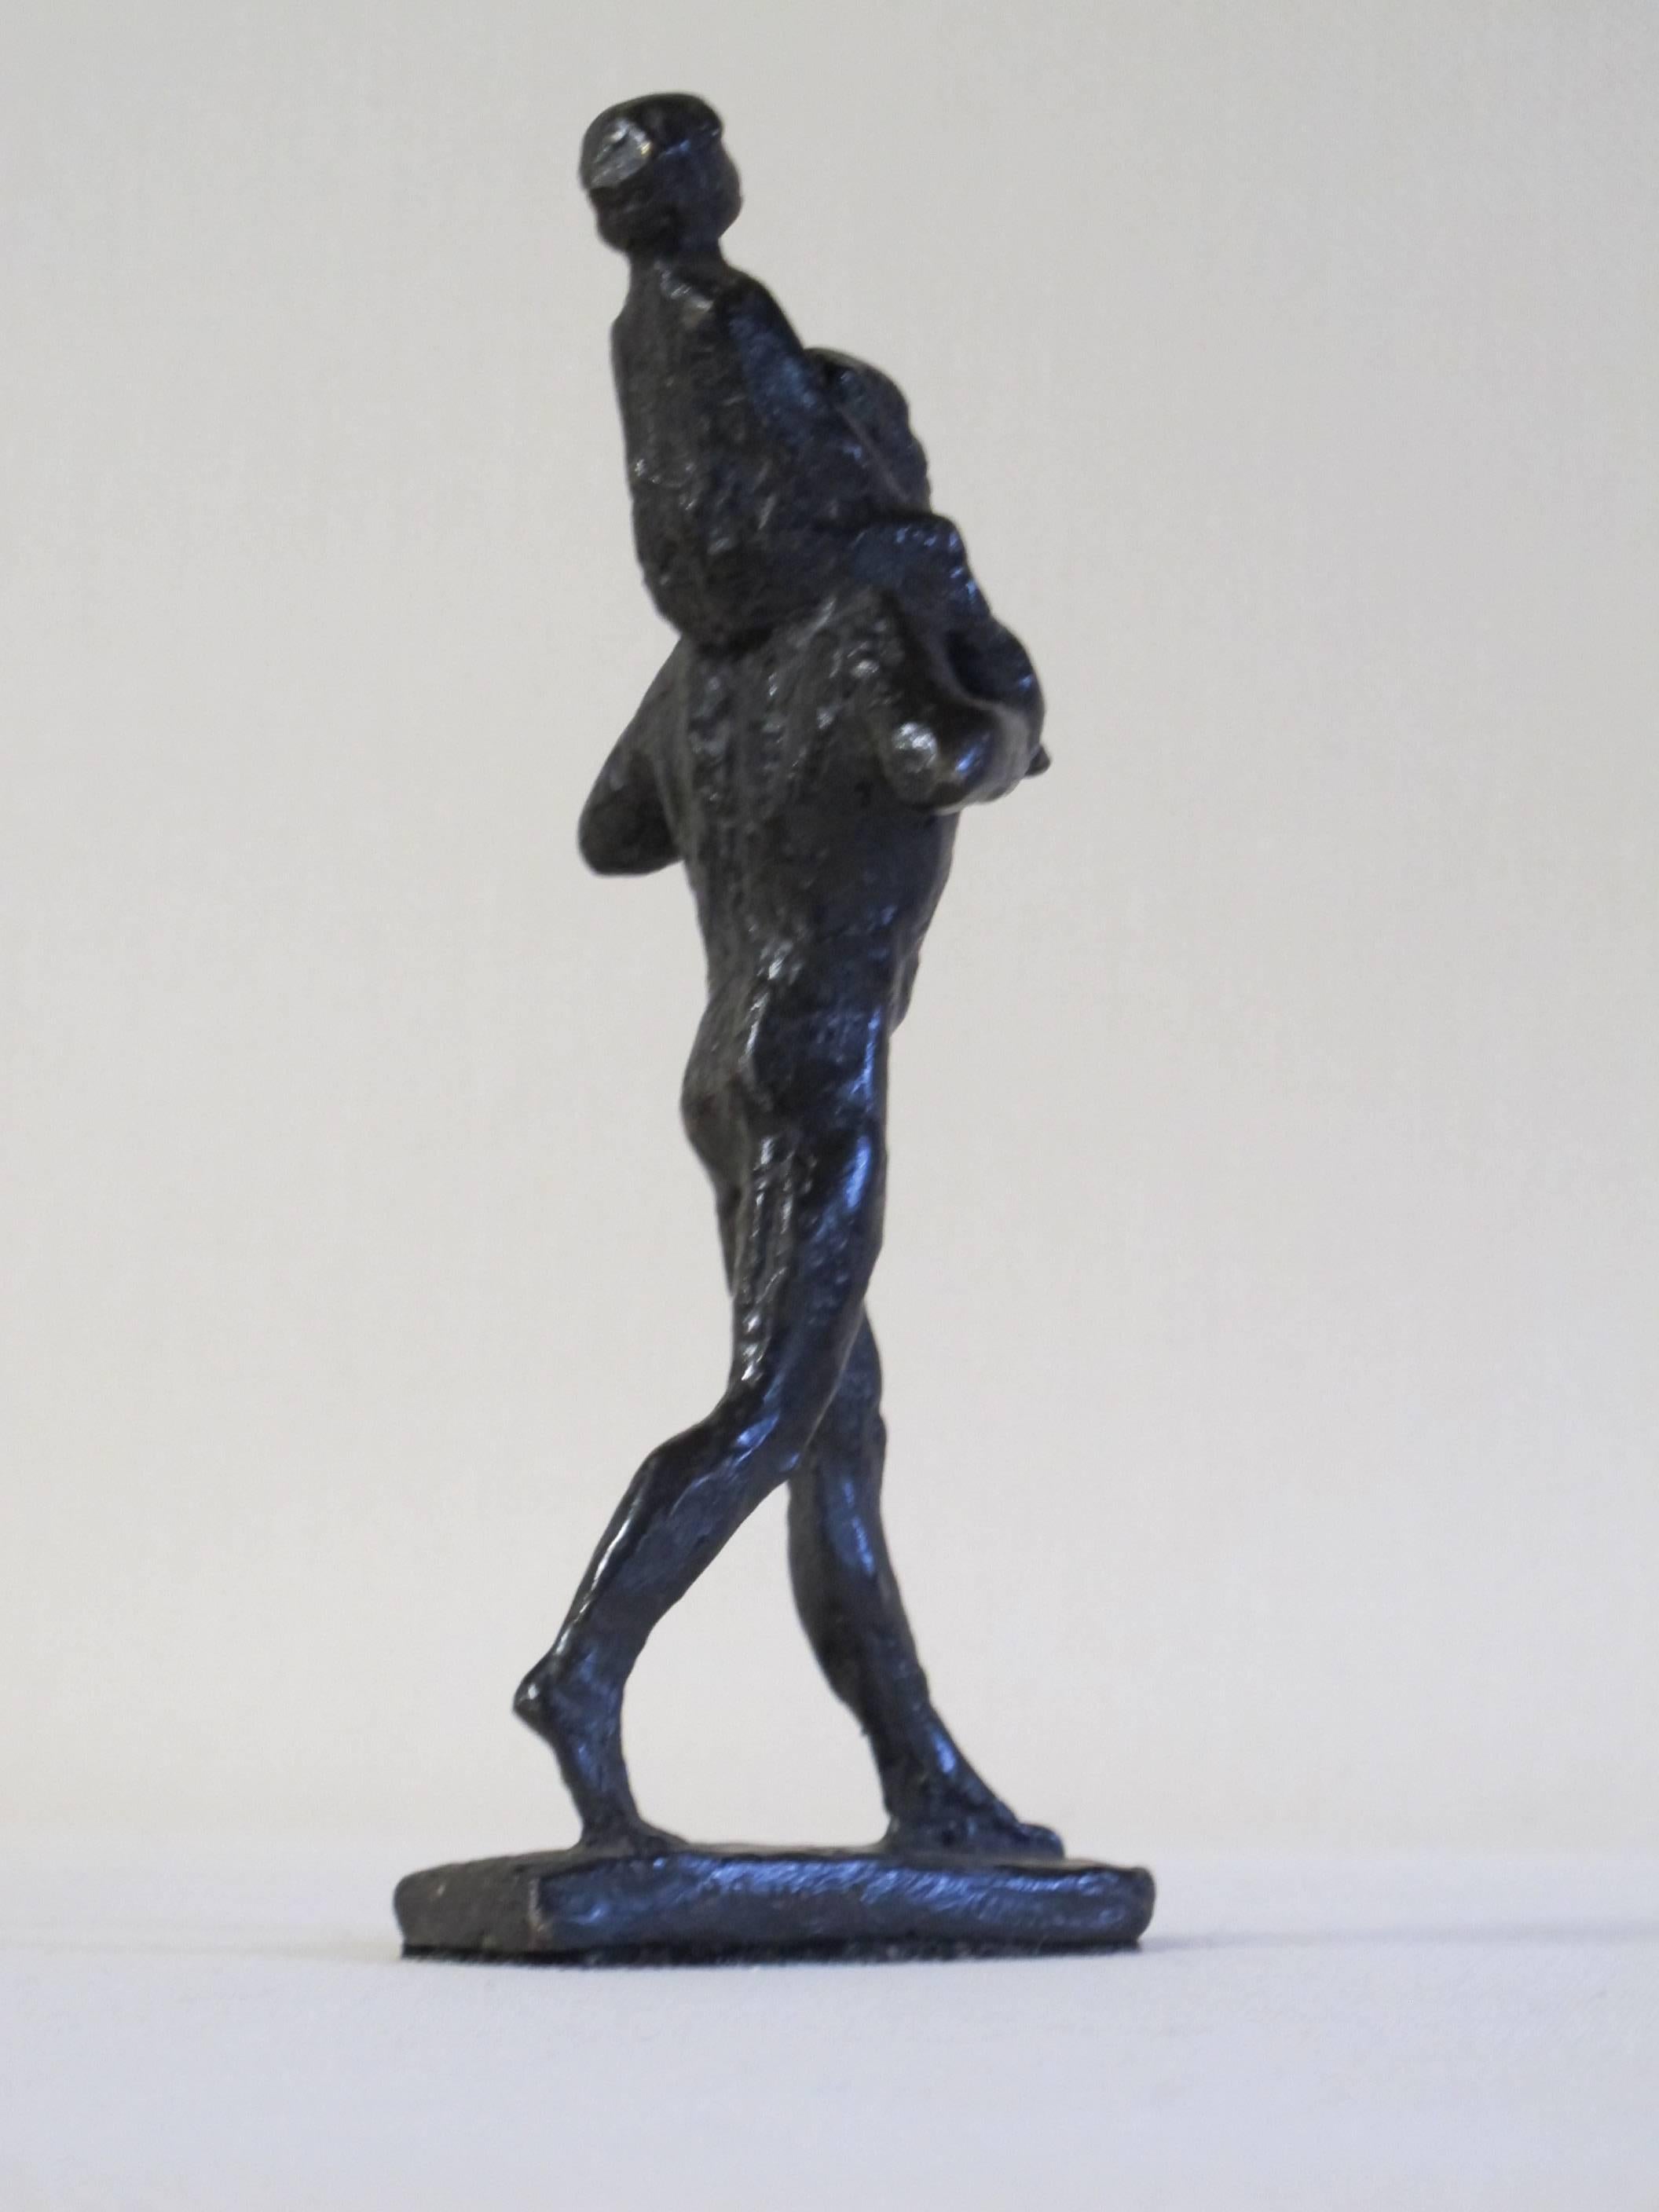 Modern Man and Child, Bronze Sculpture by Pieter d'hont, 1963